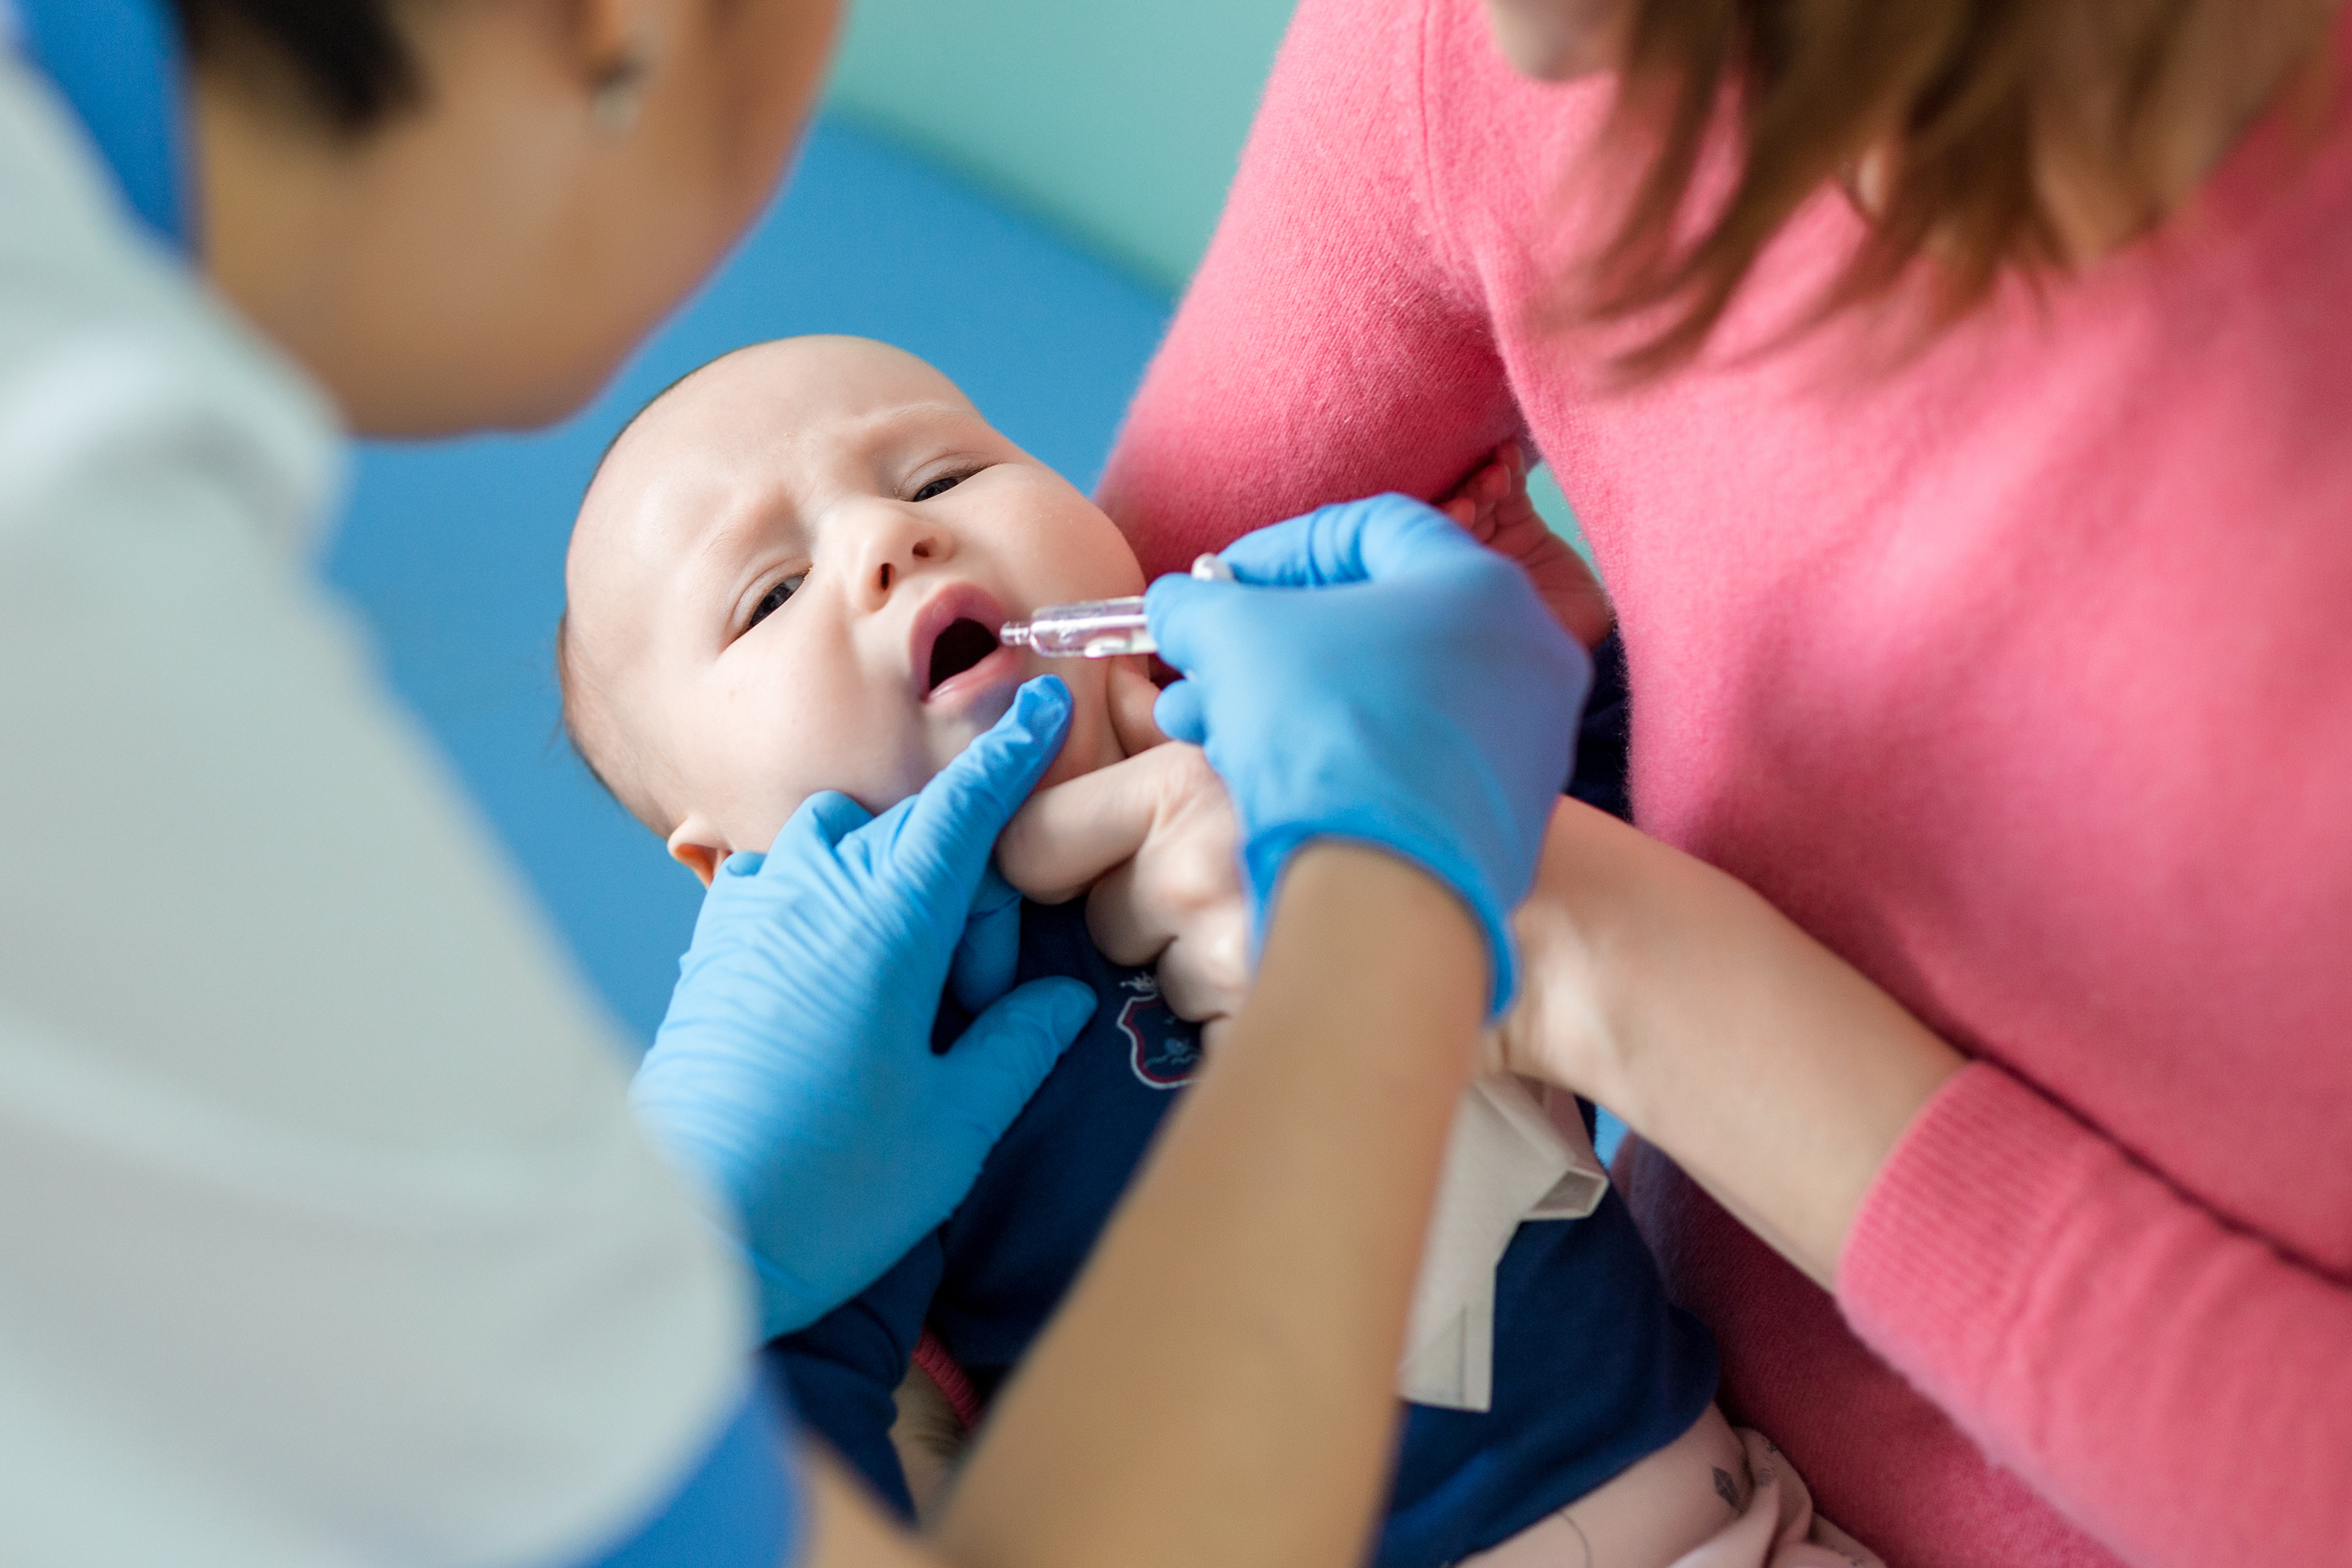   Trẻ cần được uống vắc xin phòng vi rút rota (Ảnh minh họa)  